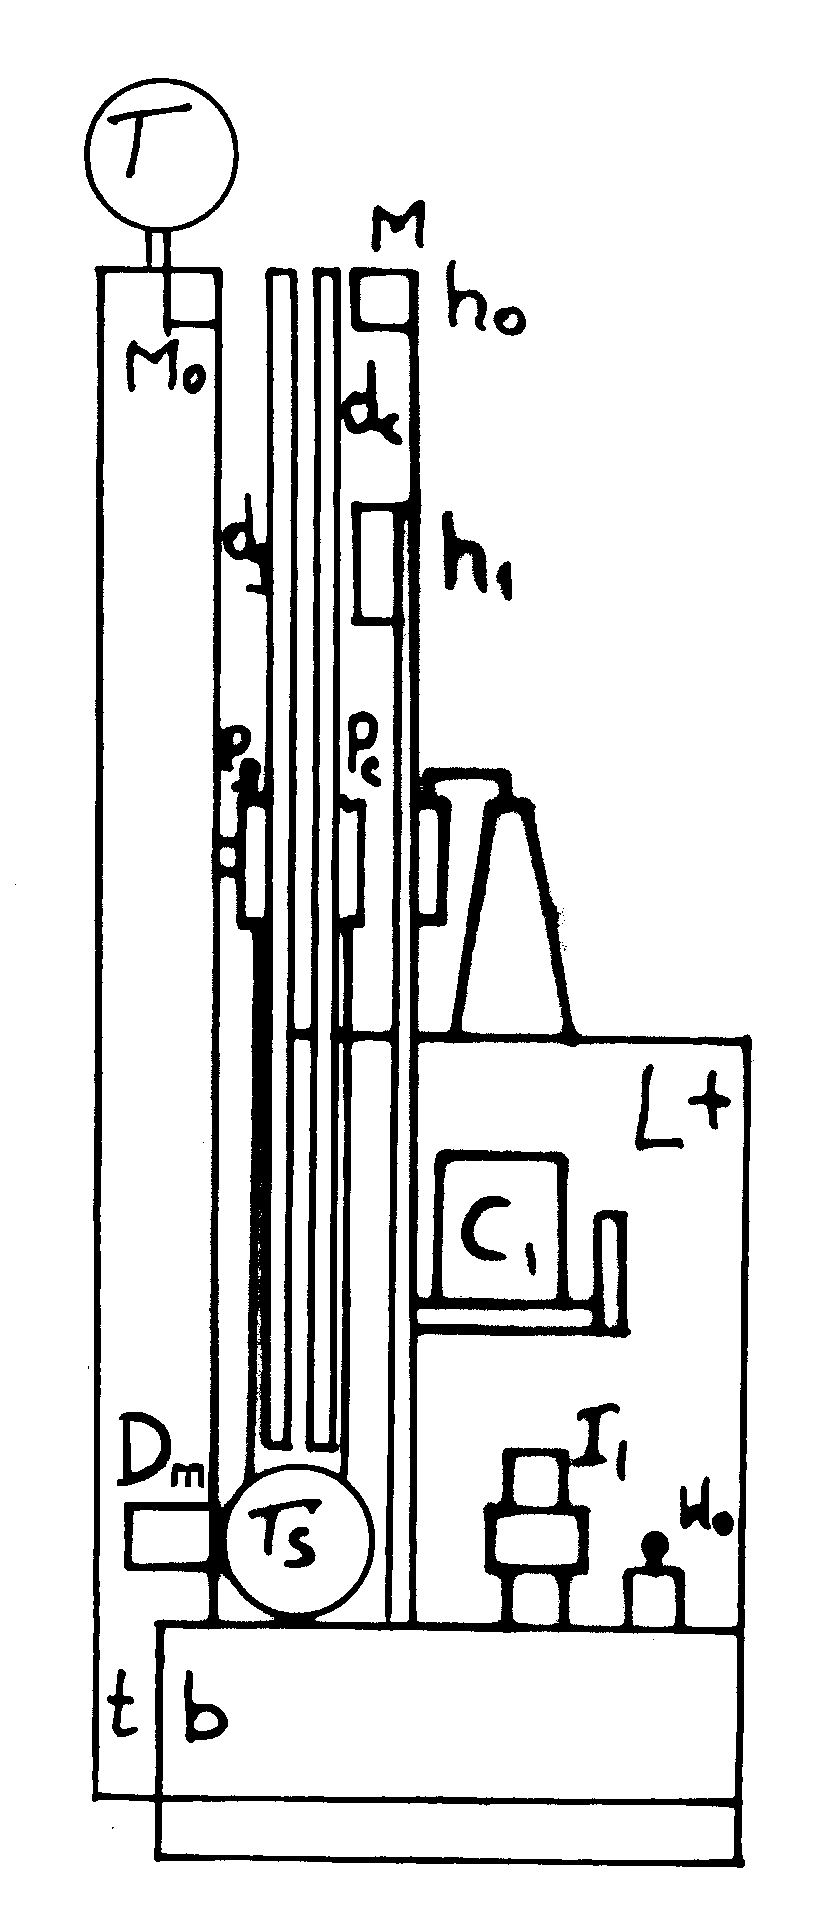 Fig./Rys. K5(e) in/w [1/4]